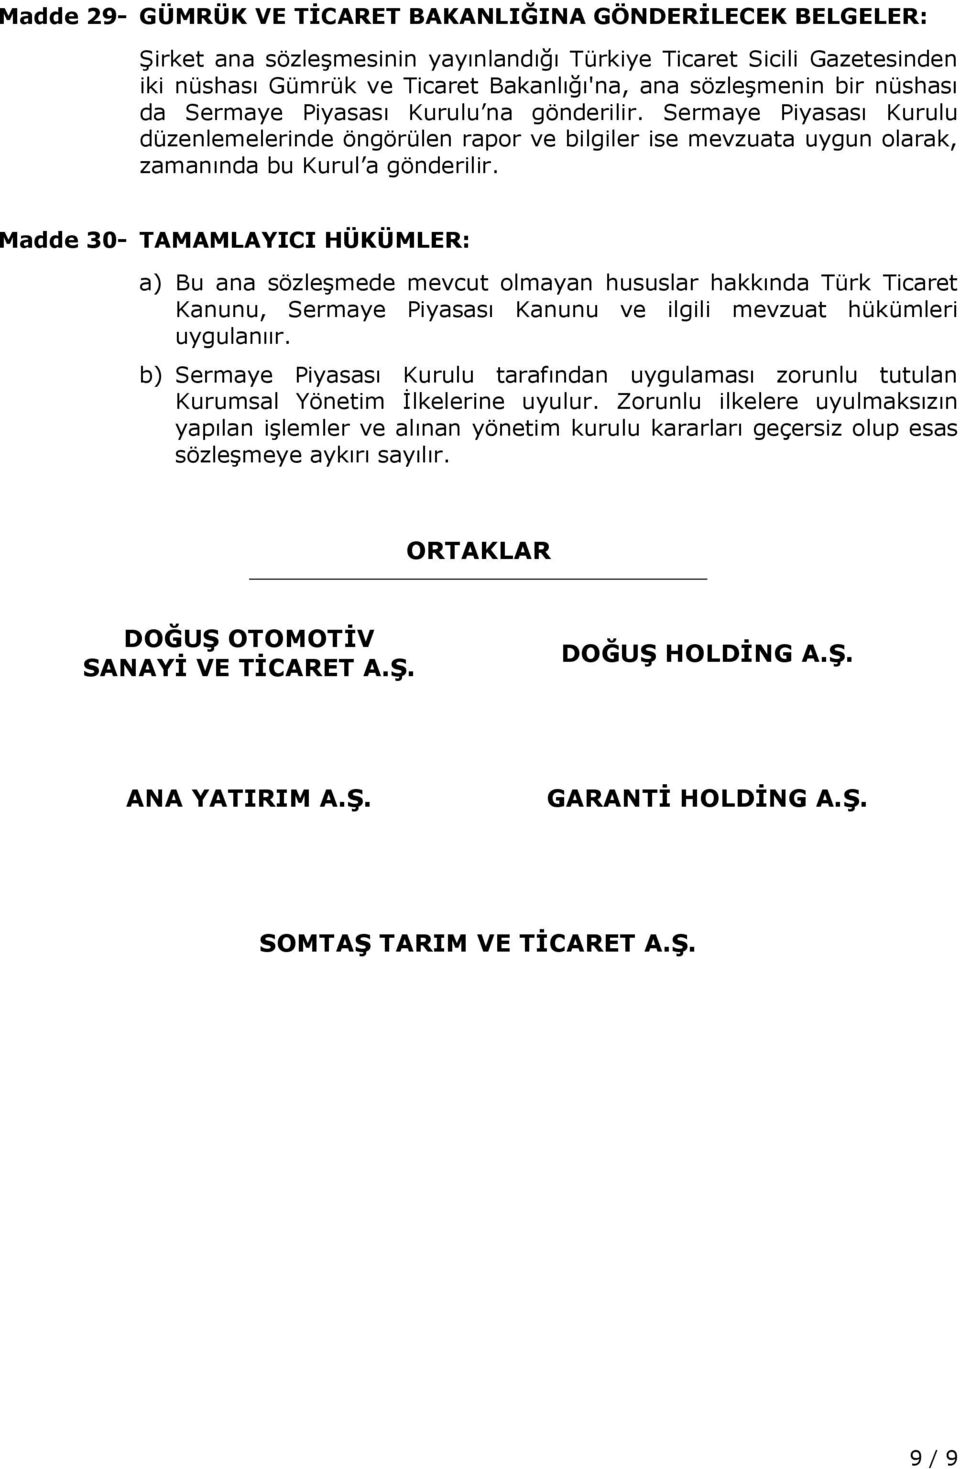 Madde 30- TAMAMLAYICI HÜKÜMLER: a) Bu ana sözleşmede mevcut olmayan hususlar hakkında Türk Ticaret Kanunu, Sermaye Piyasası Kanunu ve ilgili mevzuat hükümleri uygulanıır.